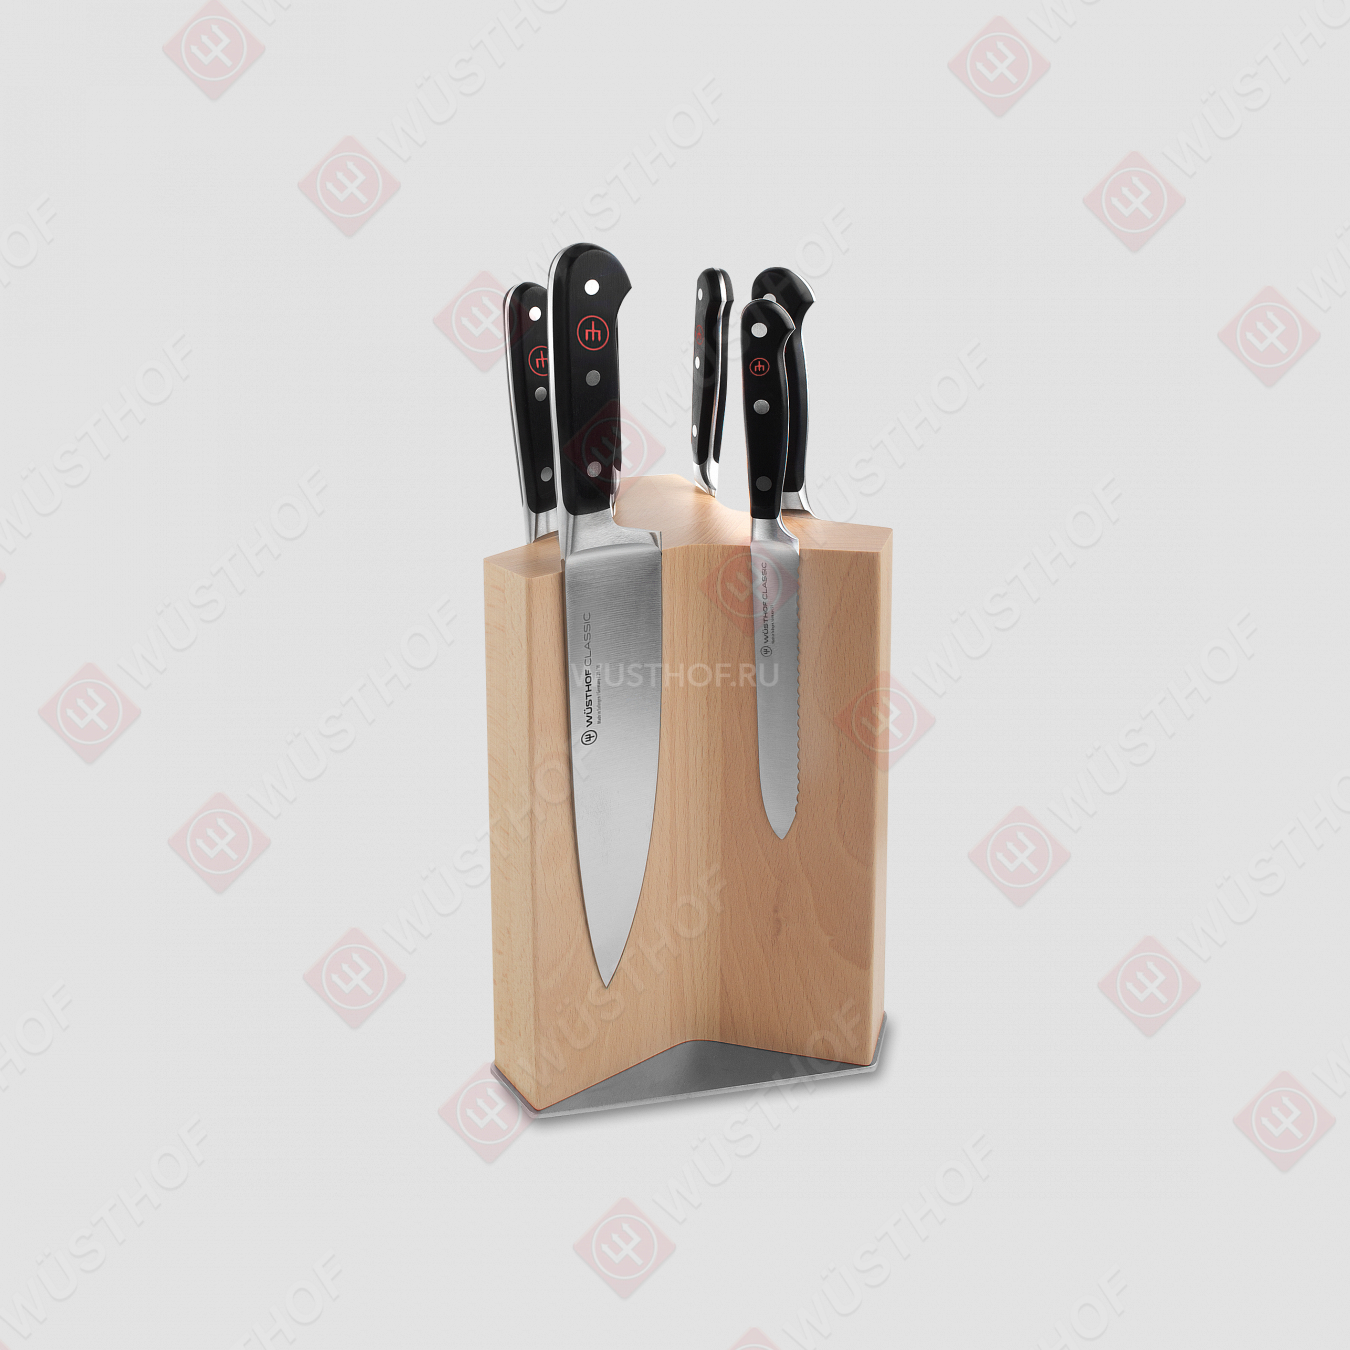 Набор из 6-ти кухонных ножей на подставке из бука, серия Classic, WUESTHOF, Золинген, Германия